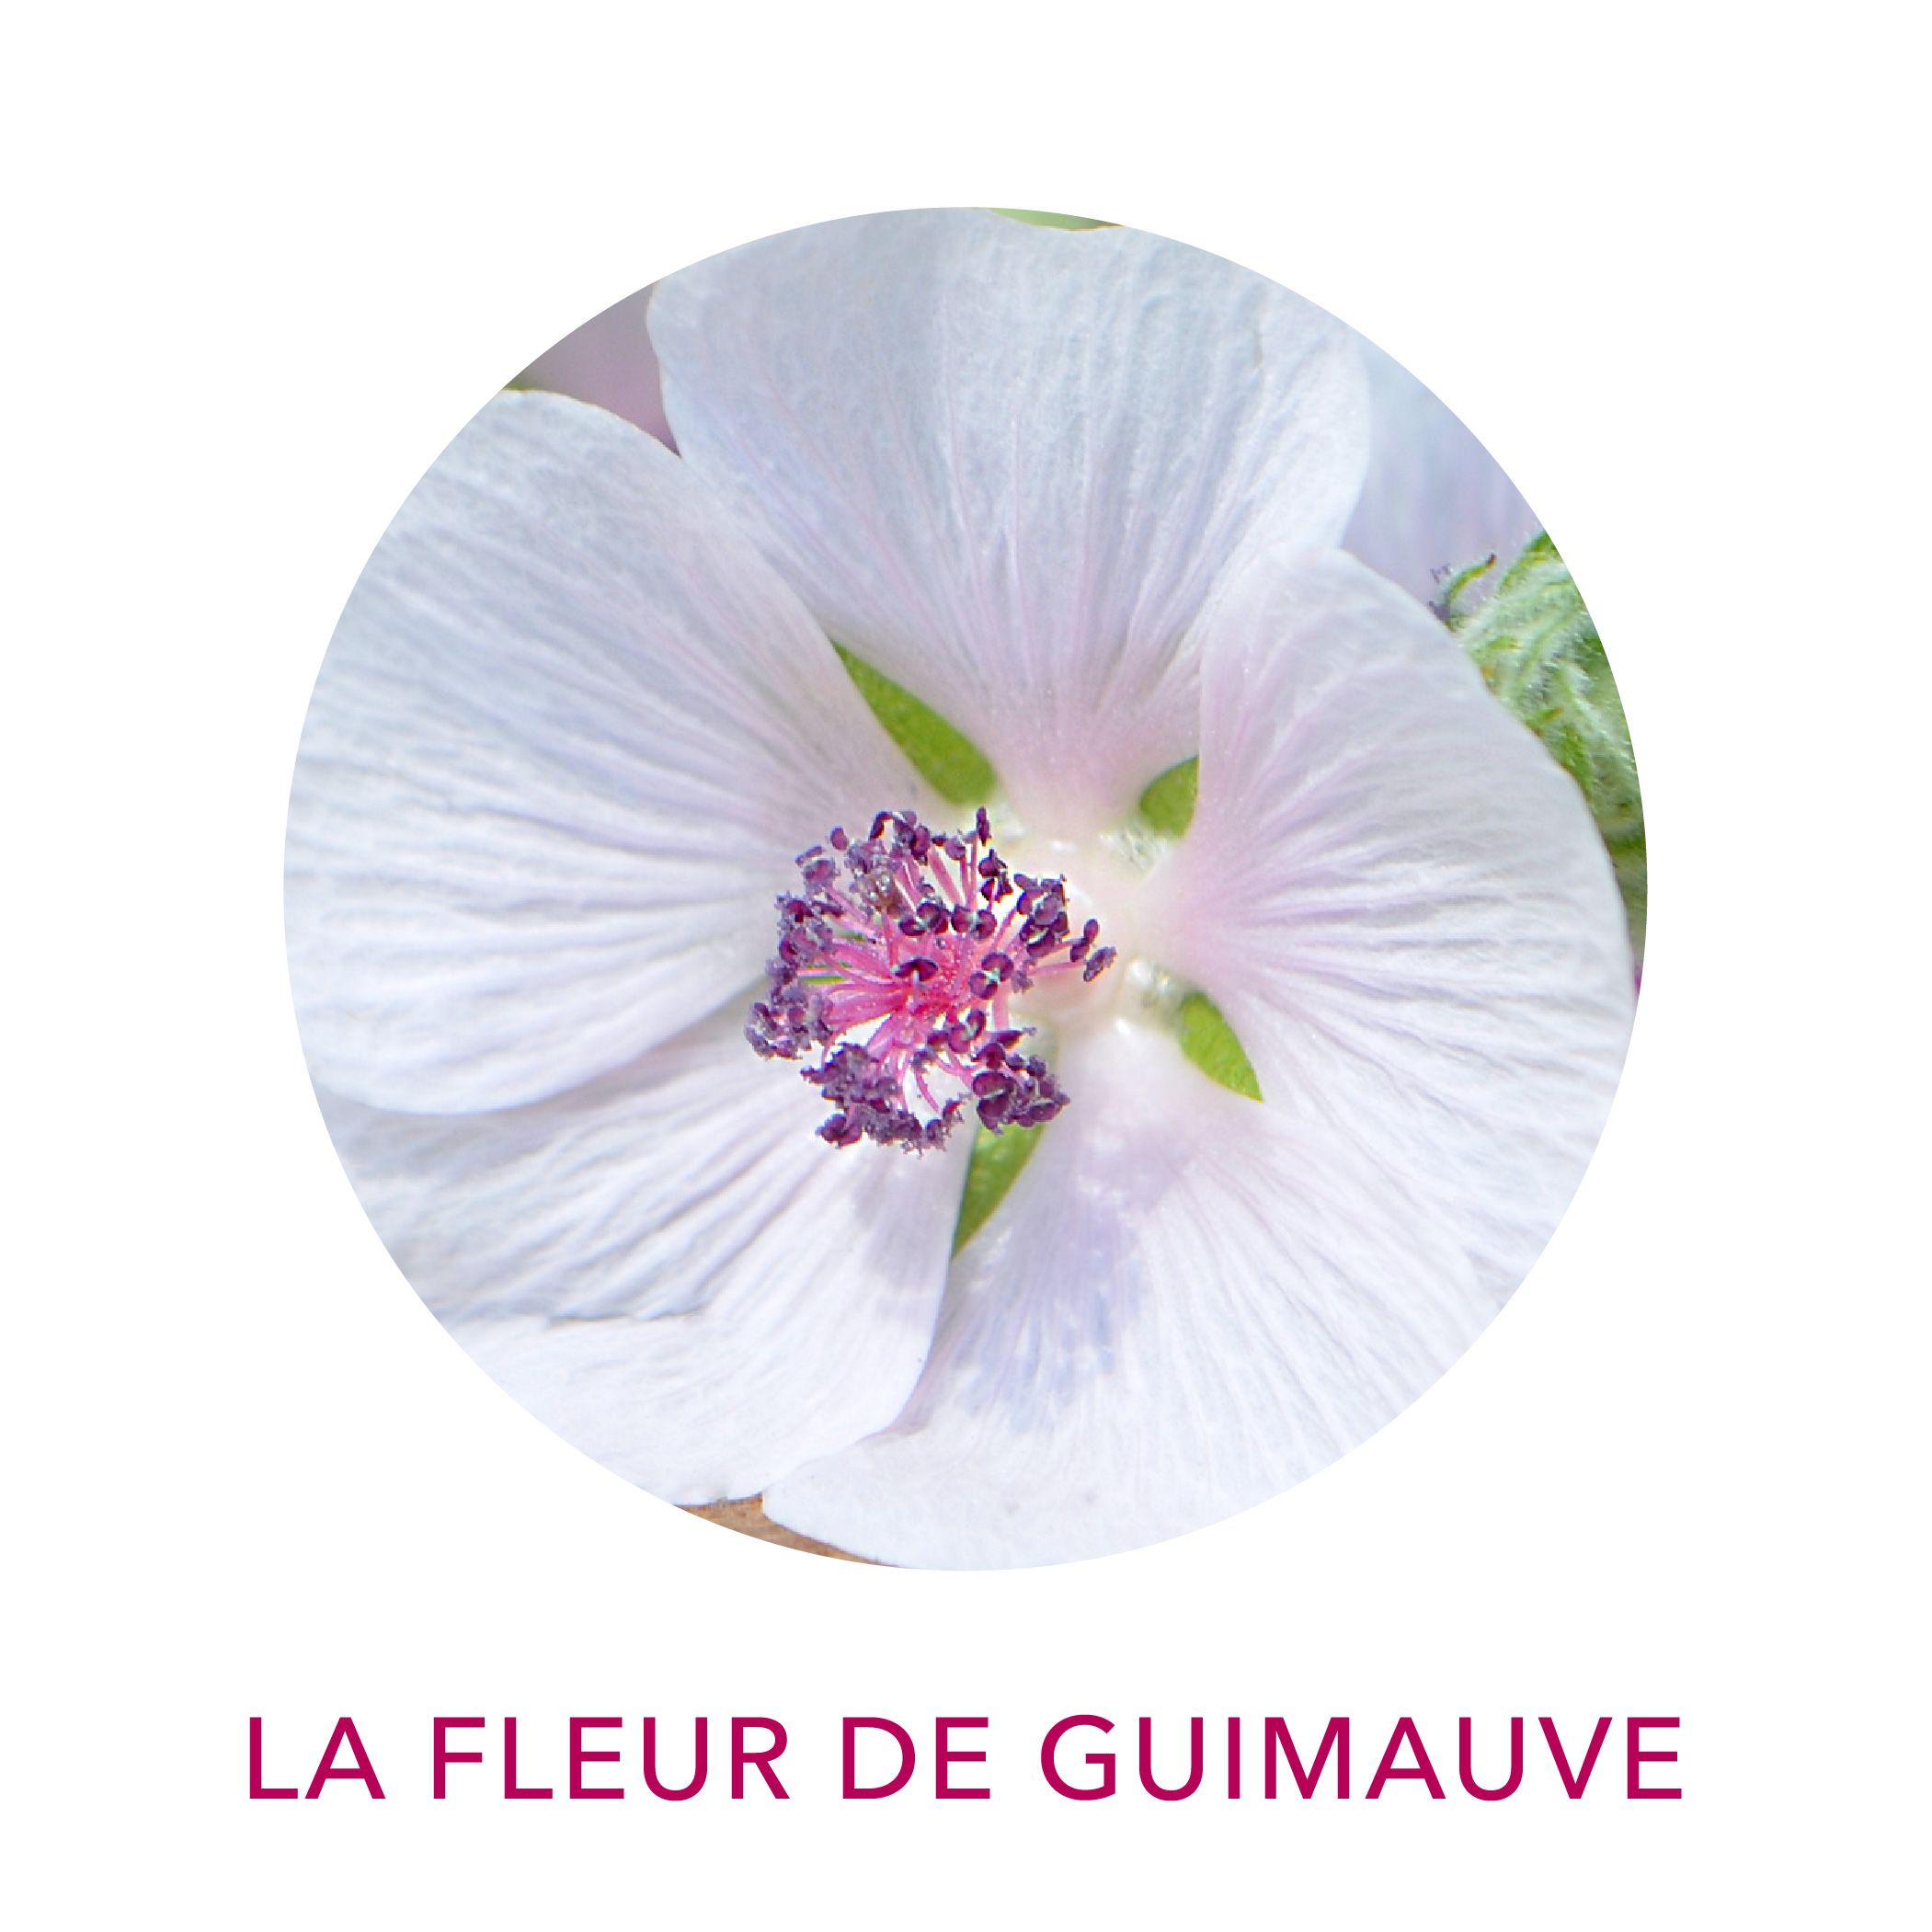 Actif cosmétique Clairjoie Guimauve